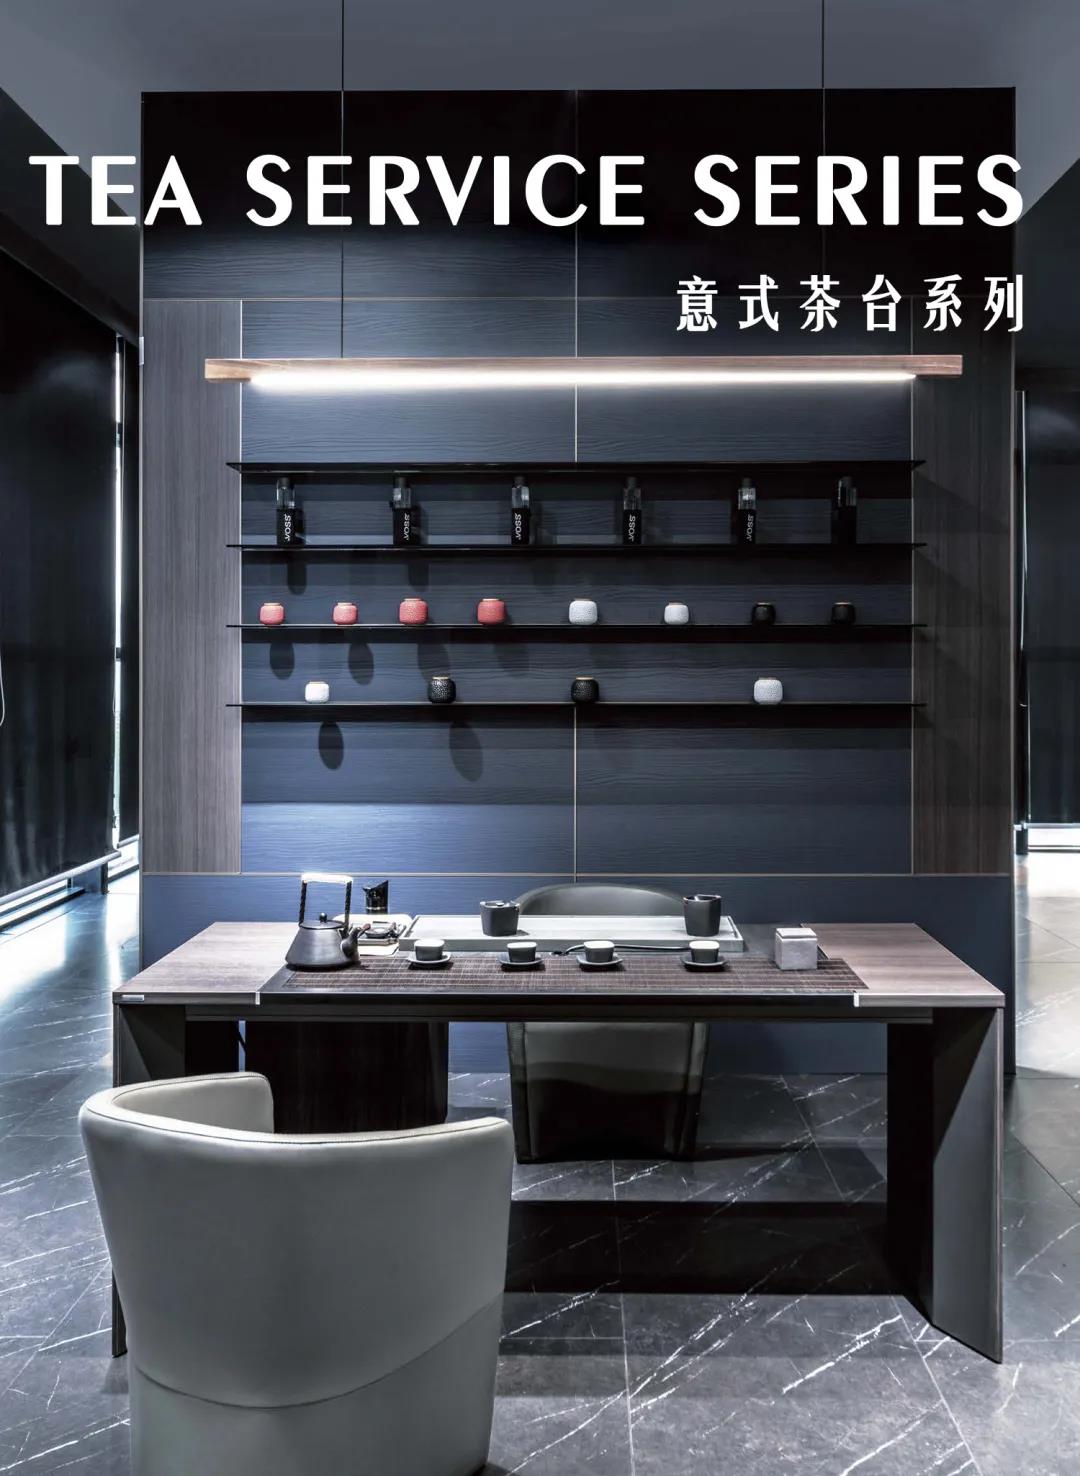 TEA SERVICE SERIES 意式茶臺系列| 享受生活品質，提高人生品味(圖2)